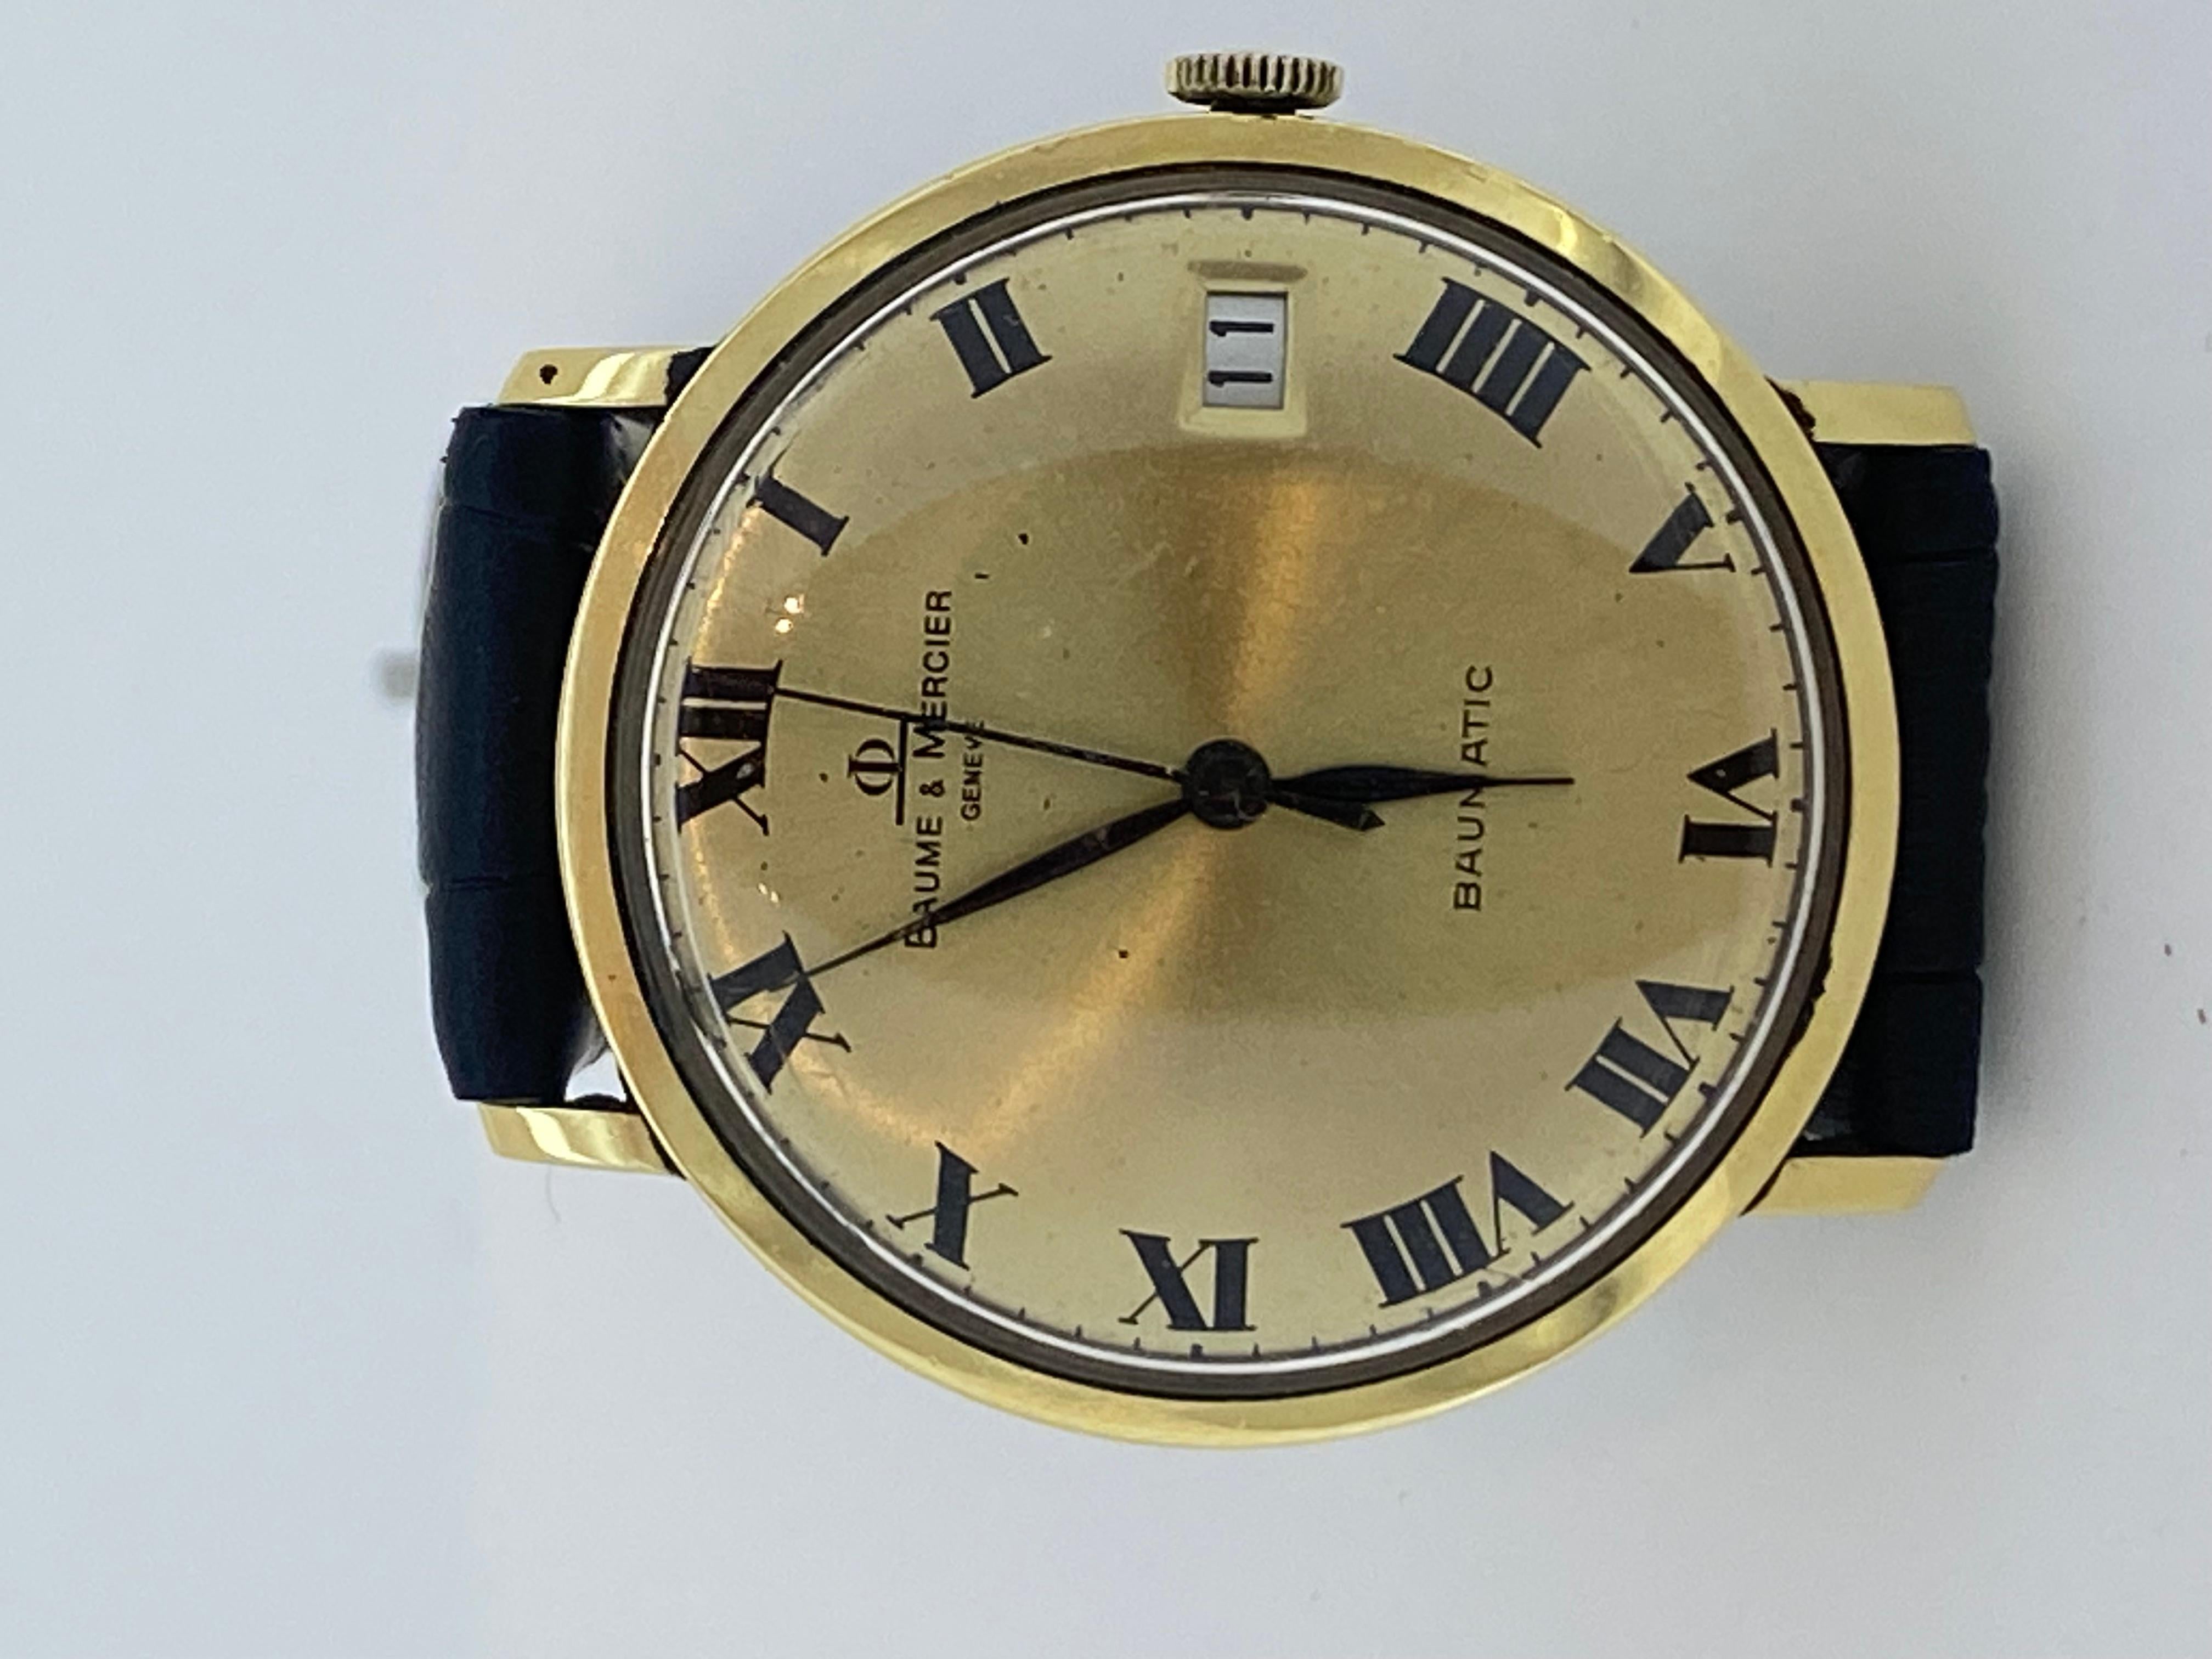 Réalisé en or massif 18 carats, 

ce garde-temps sophistiqué 

par la marque suisse de montres de luxe Baume & Mercier 

remonte aux années 1970, 

mais il est en très bon état et fonctionne très bien

 

Elle est très rare, en raison de son système